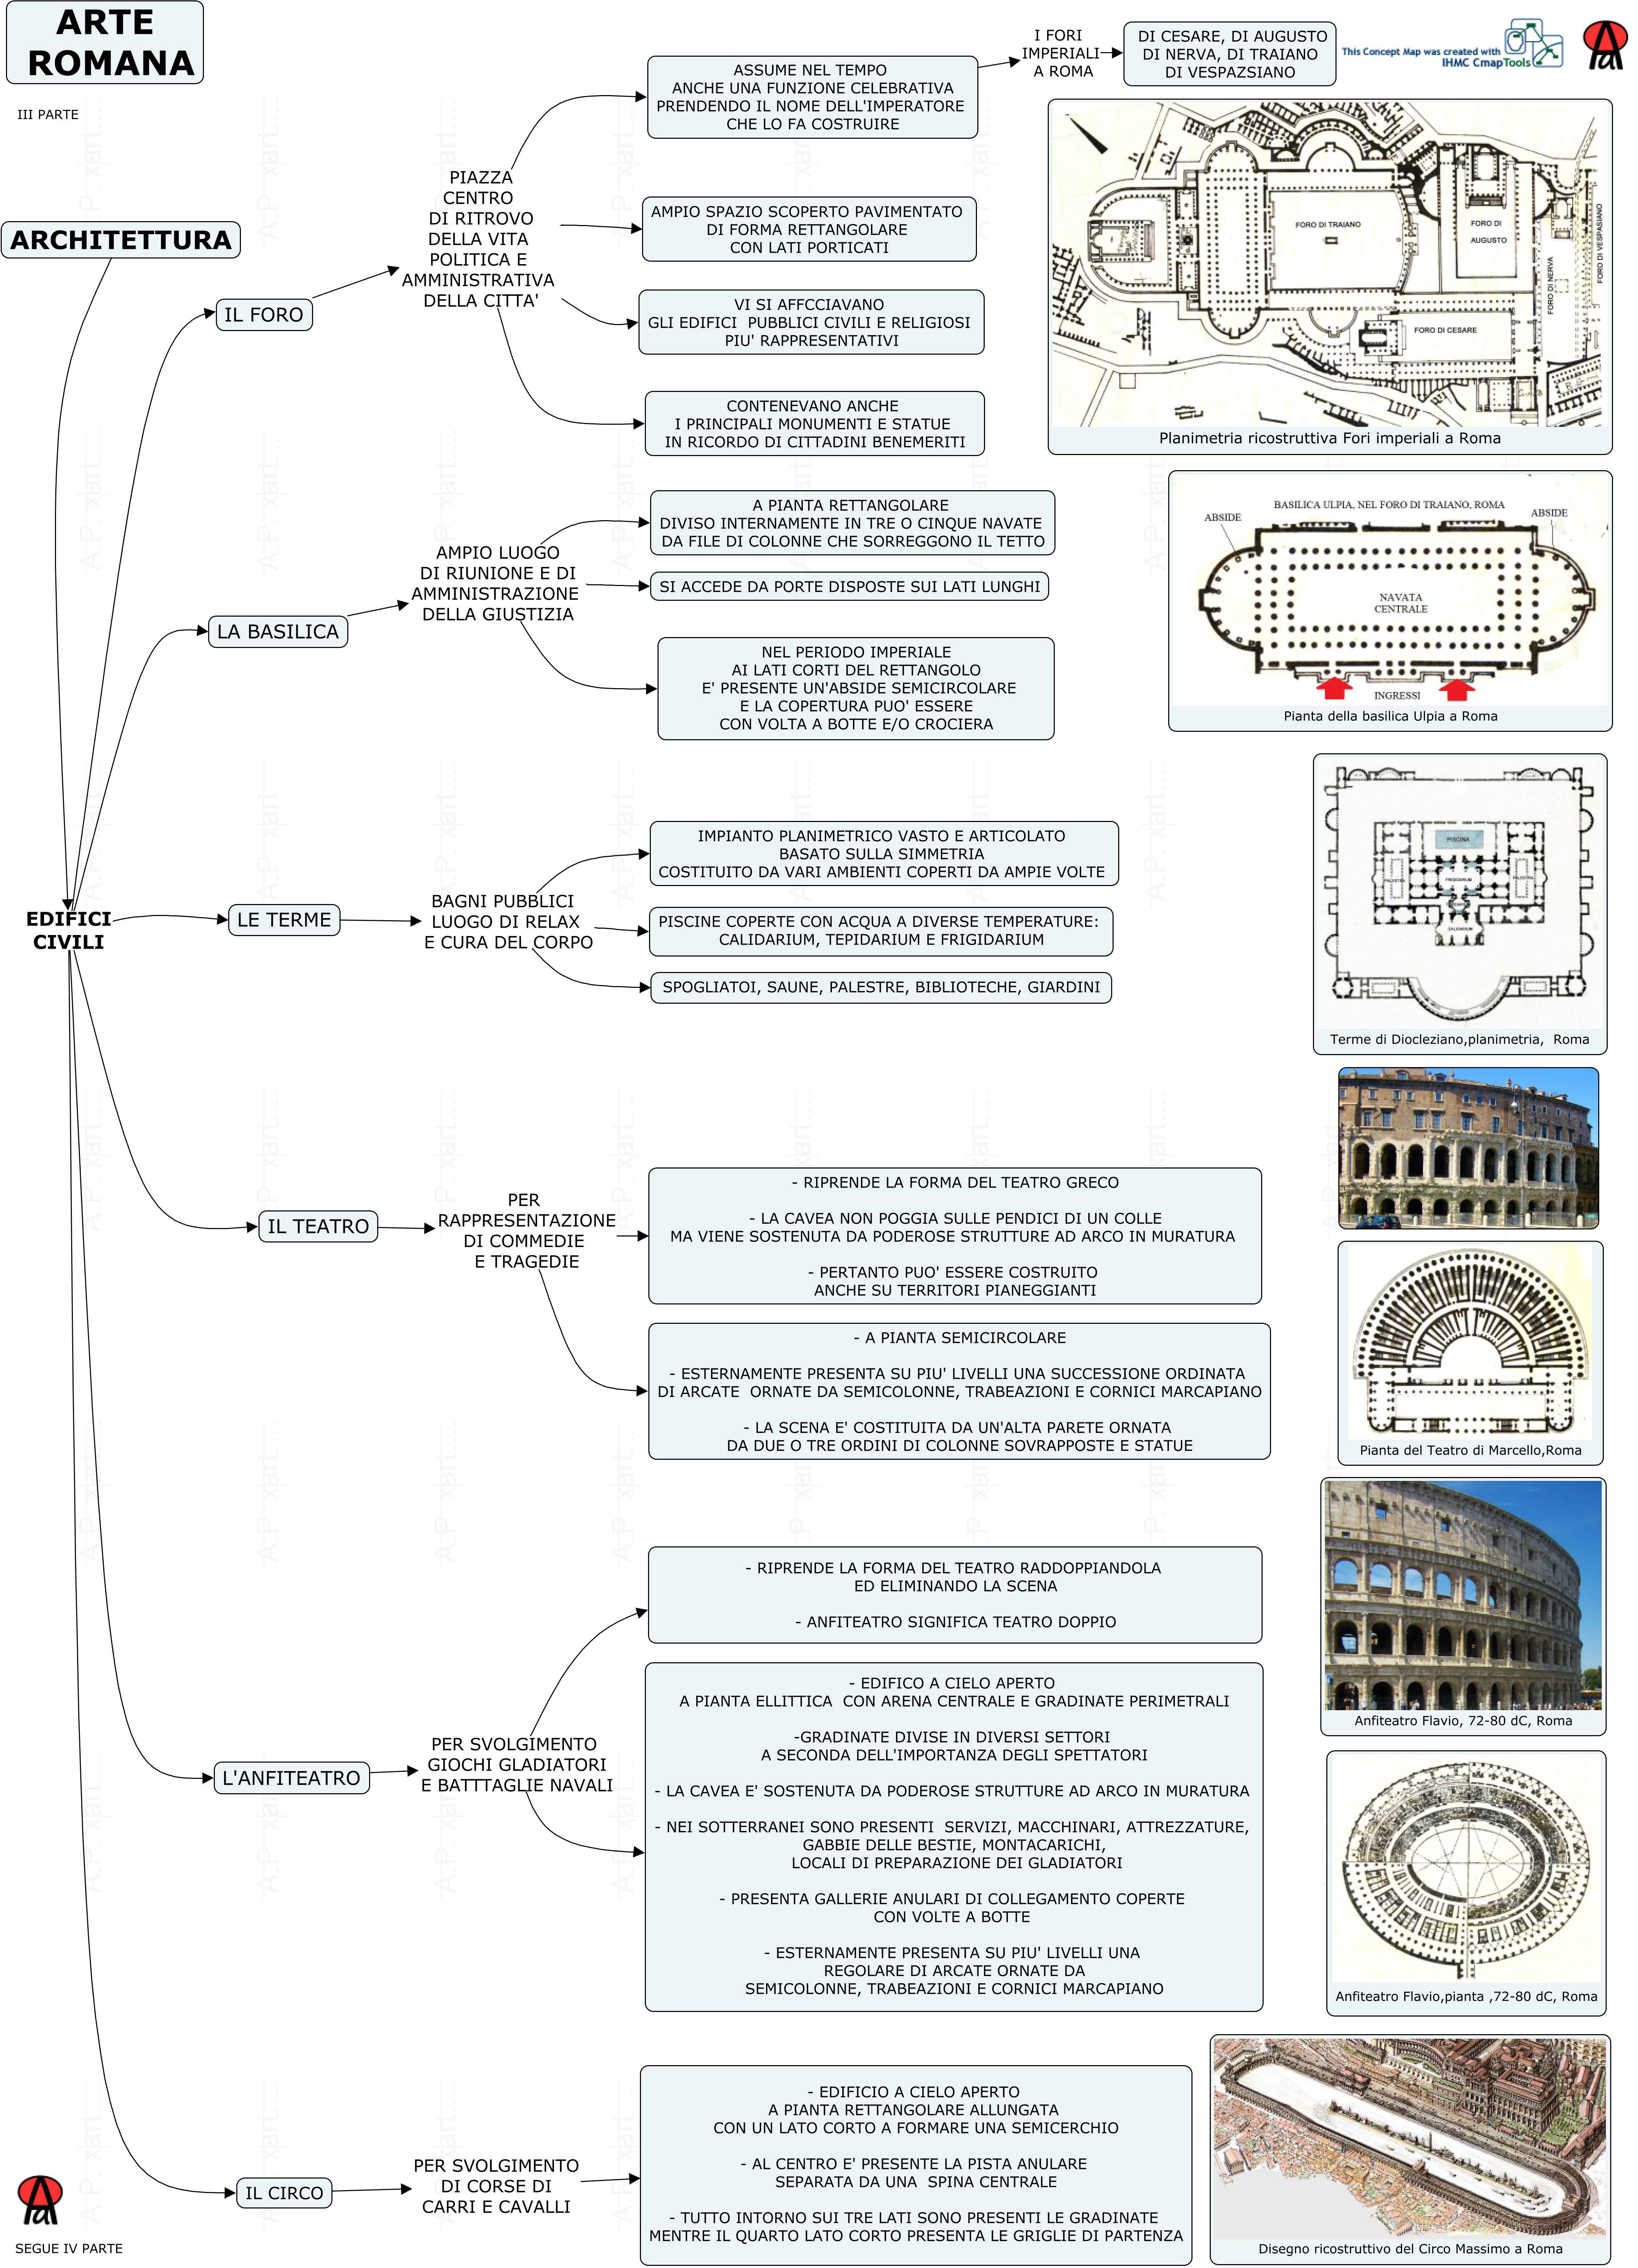 Mappa concettuale: arte romana - parte terza (architettura civile)